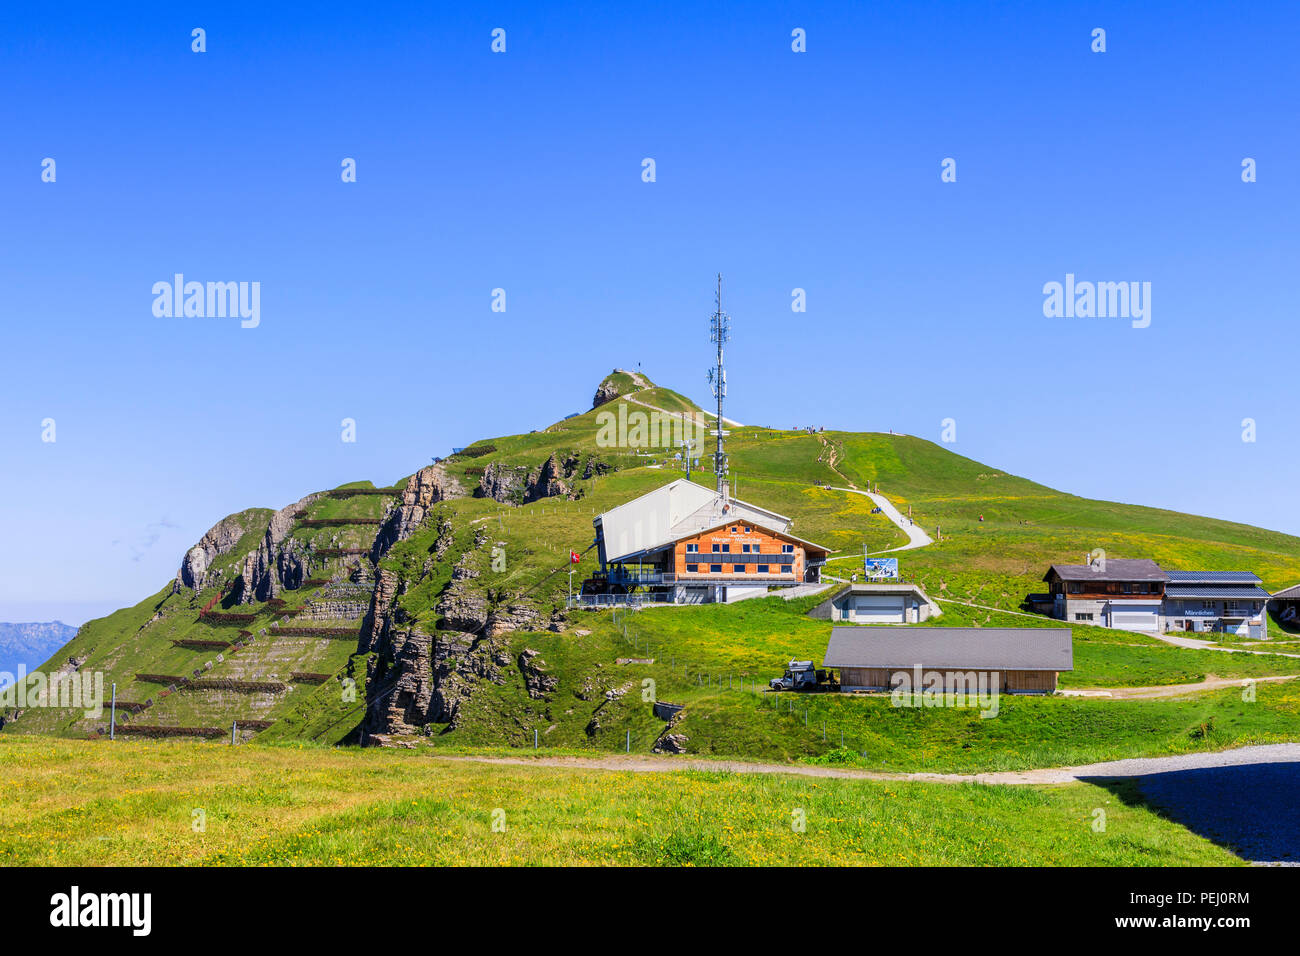 Mannlichen stazione della funivia al di sopra di Wengen nella regione di Jungfrau e percorso a piedi per il Royal View, Oberland bernese, Svizzera con cielo blu chiaro Foto Stock